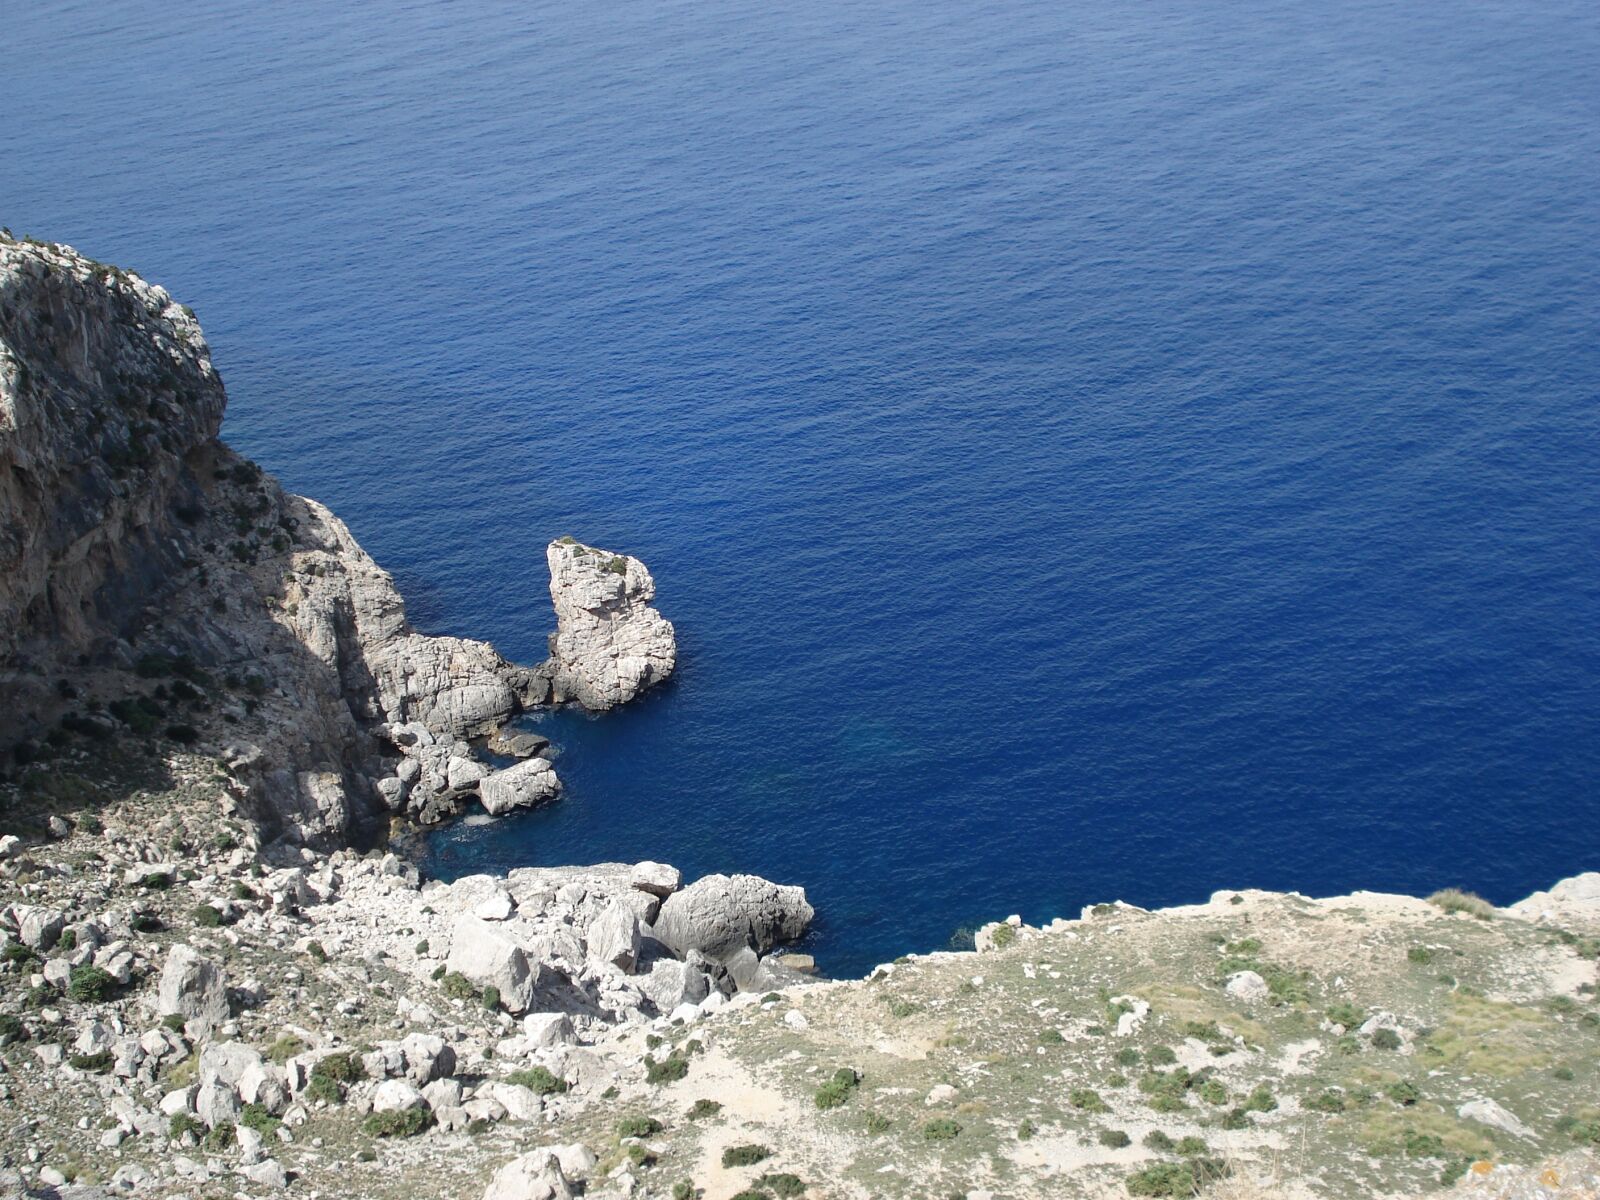 Sony DSC-W50 sample photo. Balearic islands, mallorca, bay photography